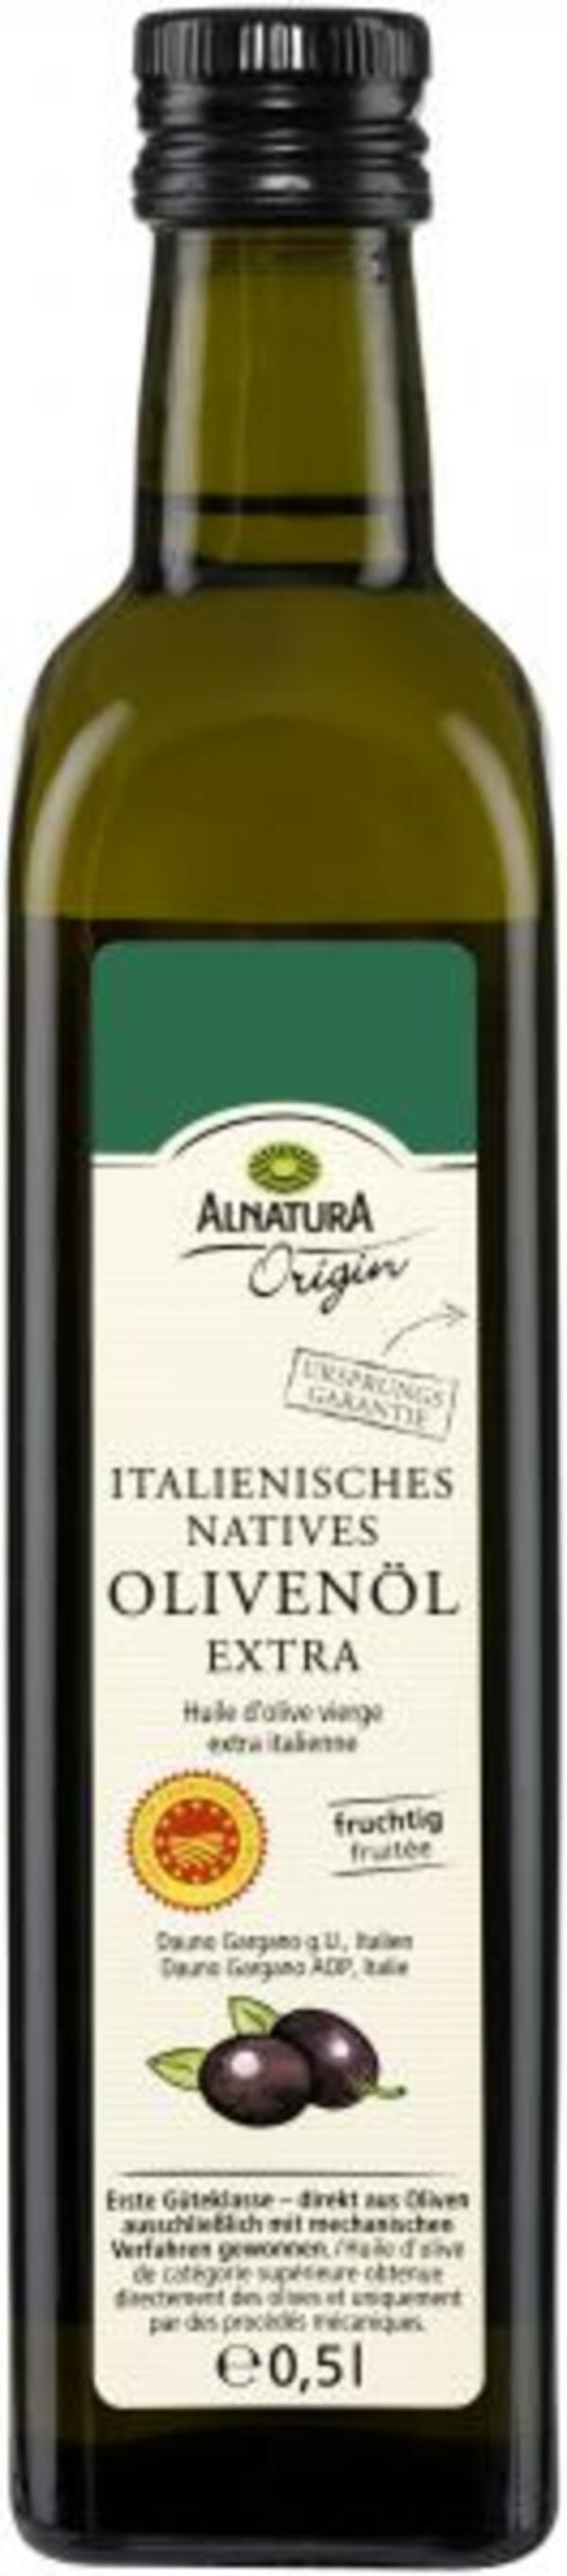 Bild 1 von Alnatura Origin Italienisches Natives Olivenöl Extra